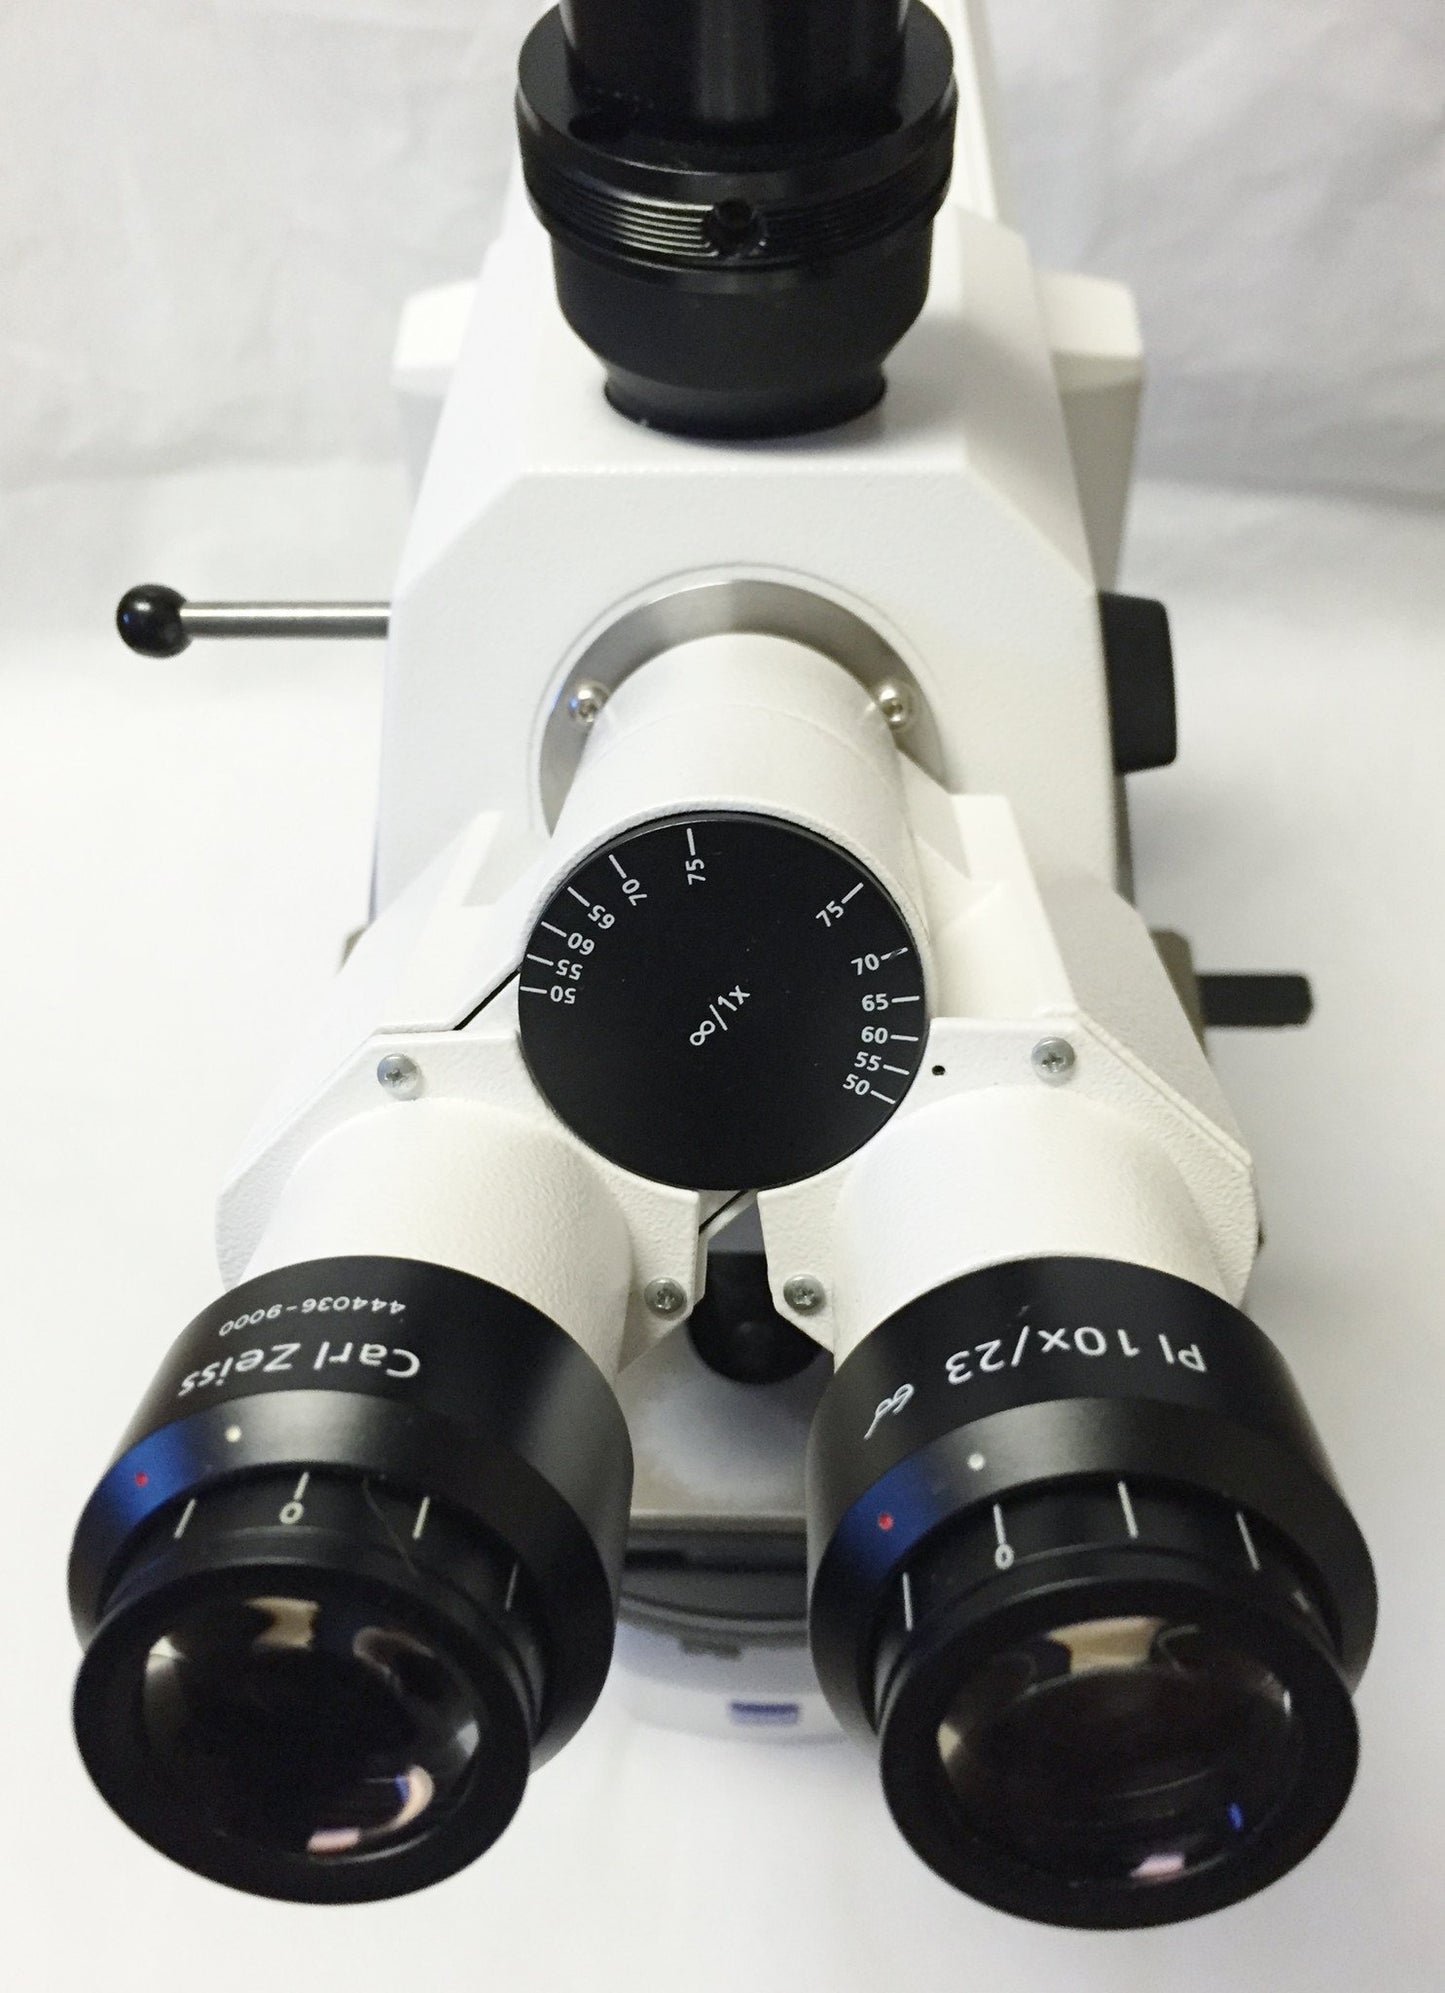 Zeiss AXIO Scope.A1 Trinocular Pathology Microscope w/ 2.5x Objective